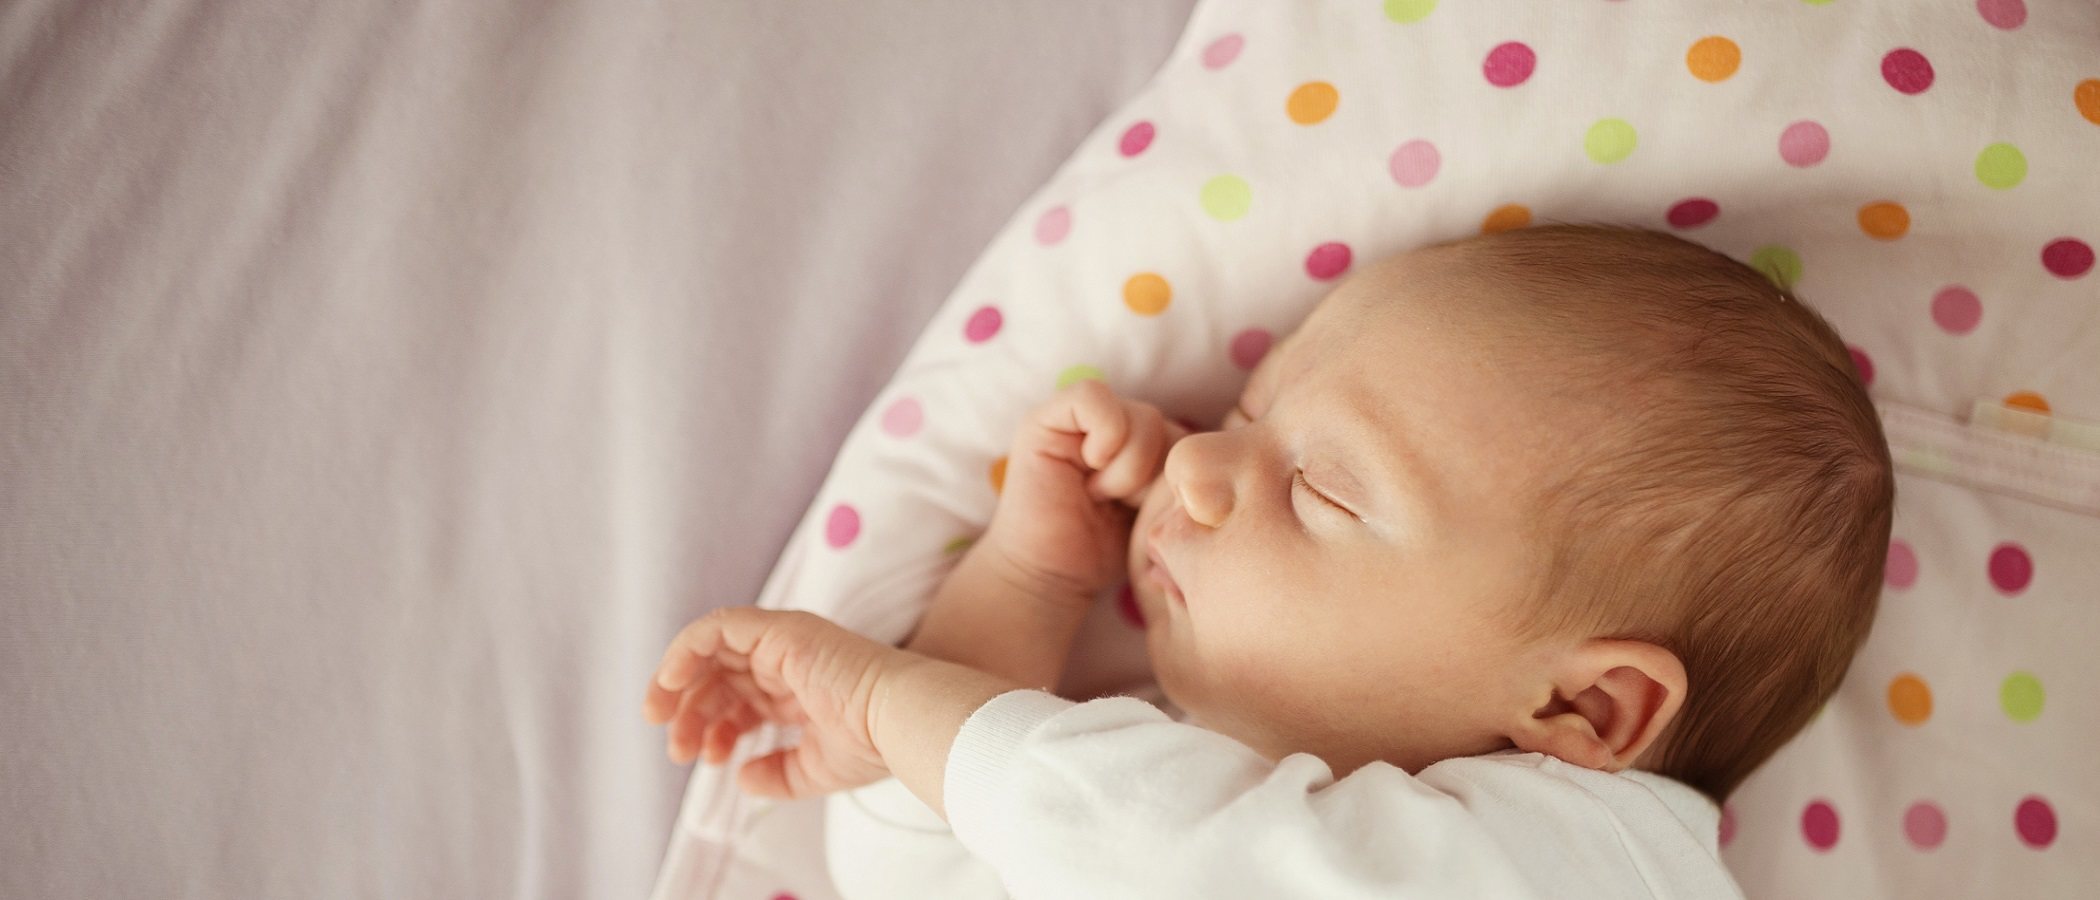 25 nombres celestiales para tu bebé